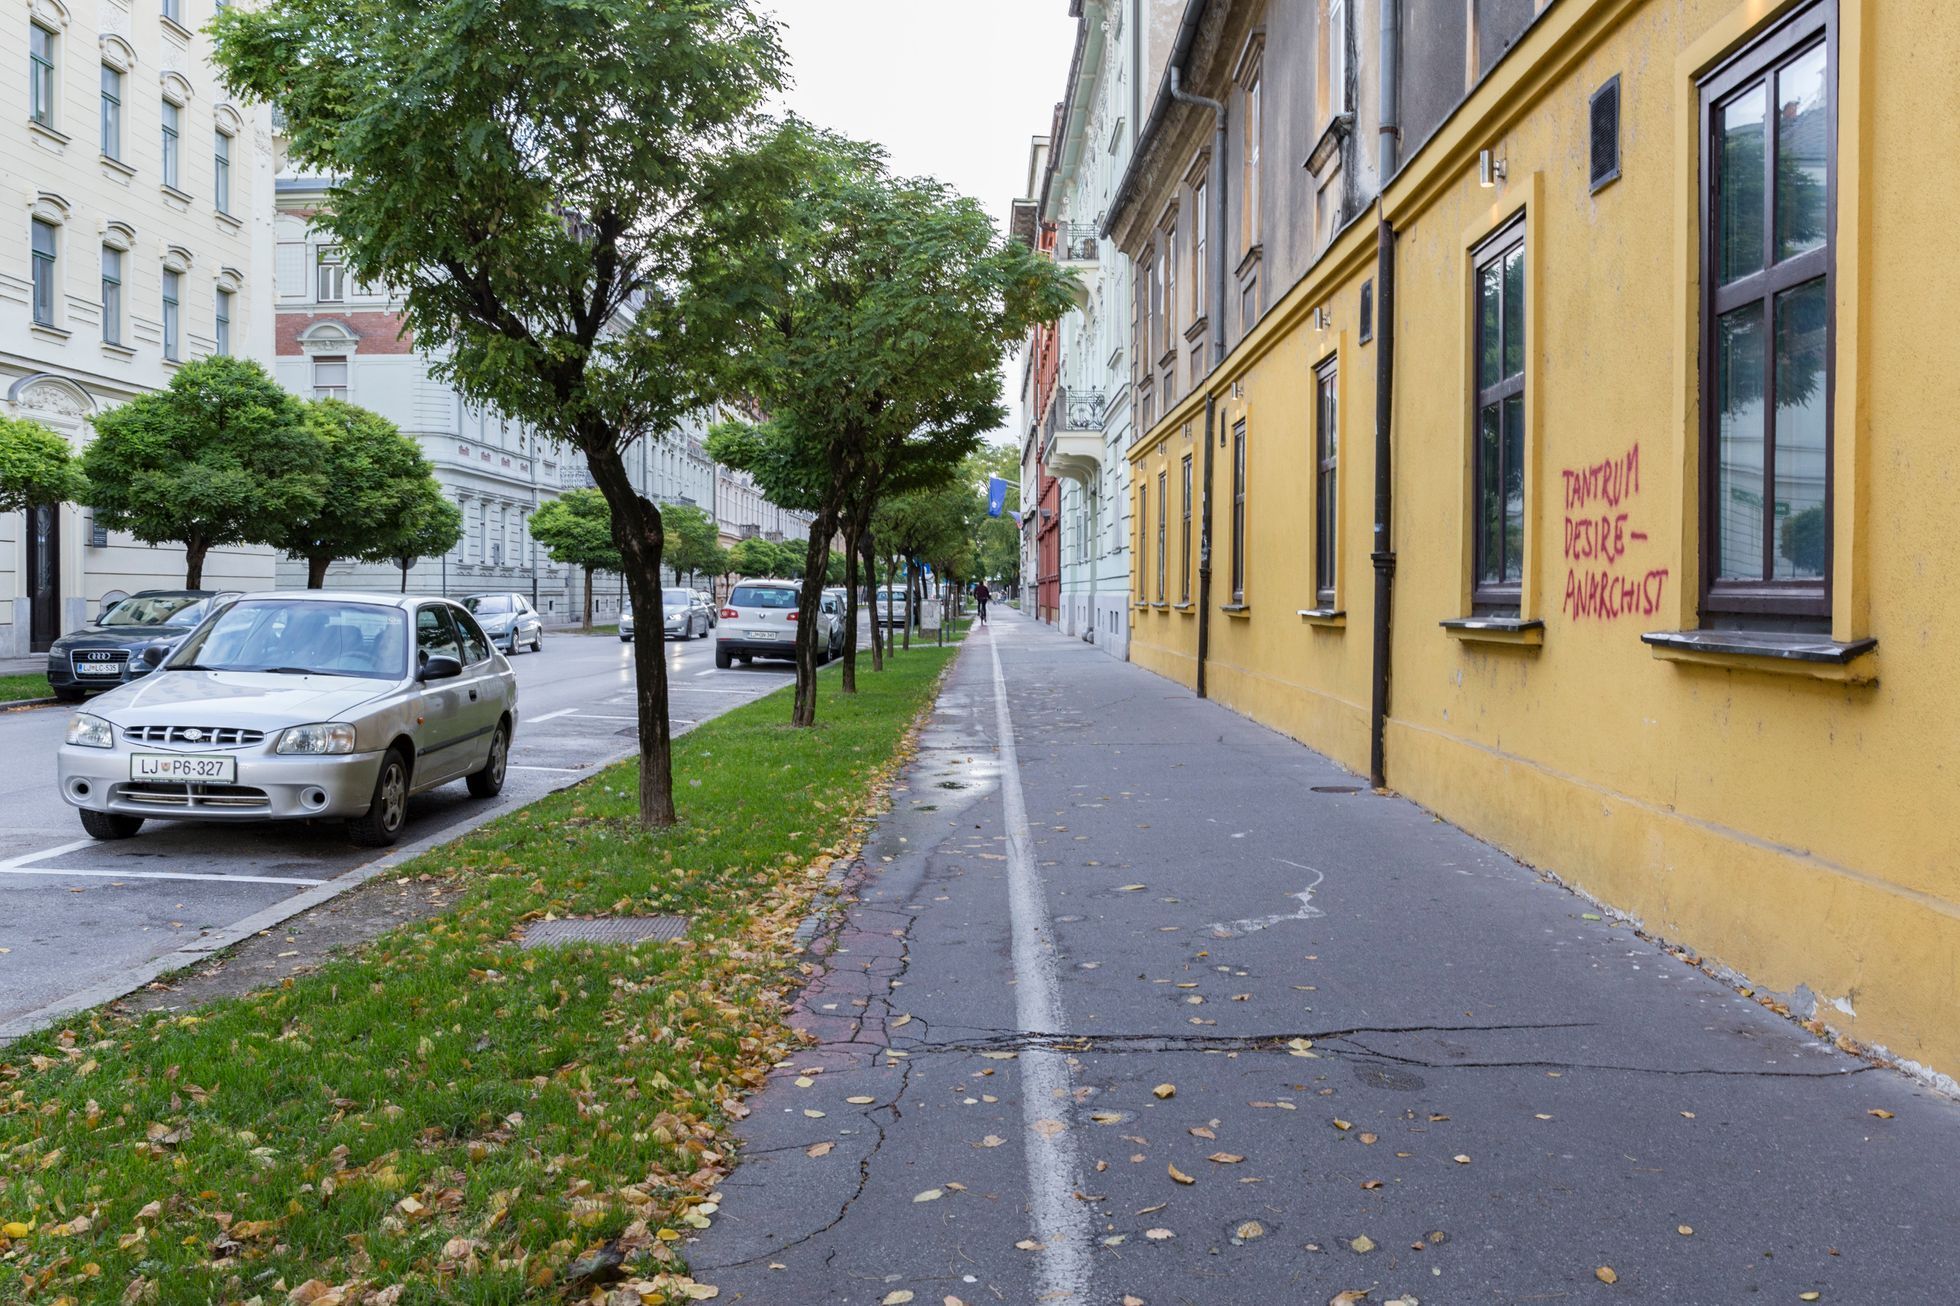 Cyklodoprava v Lublani